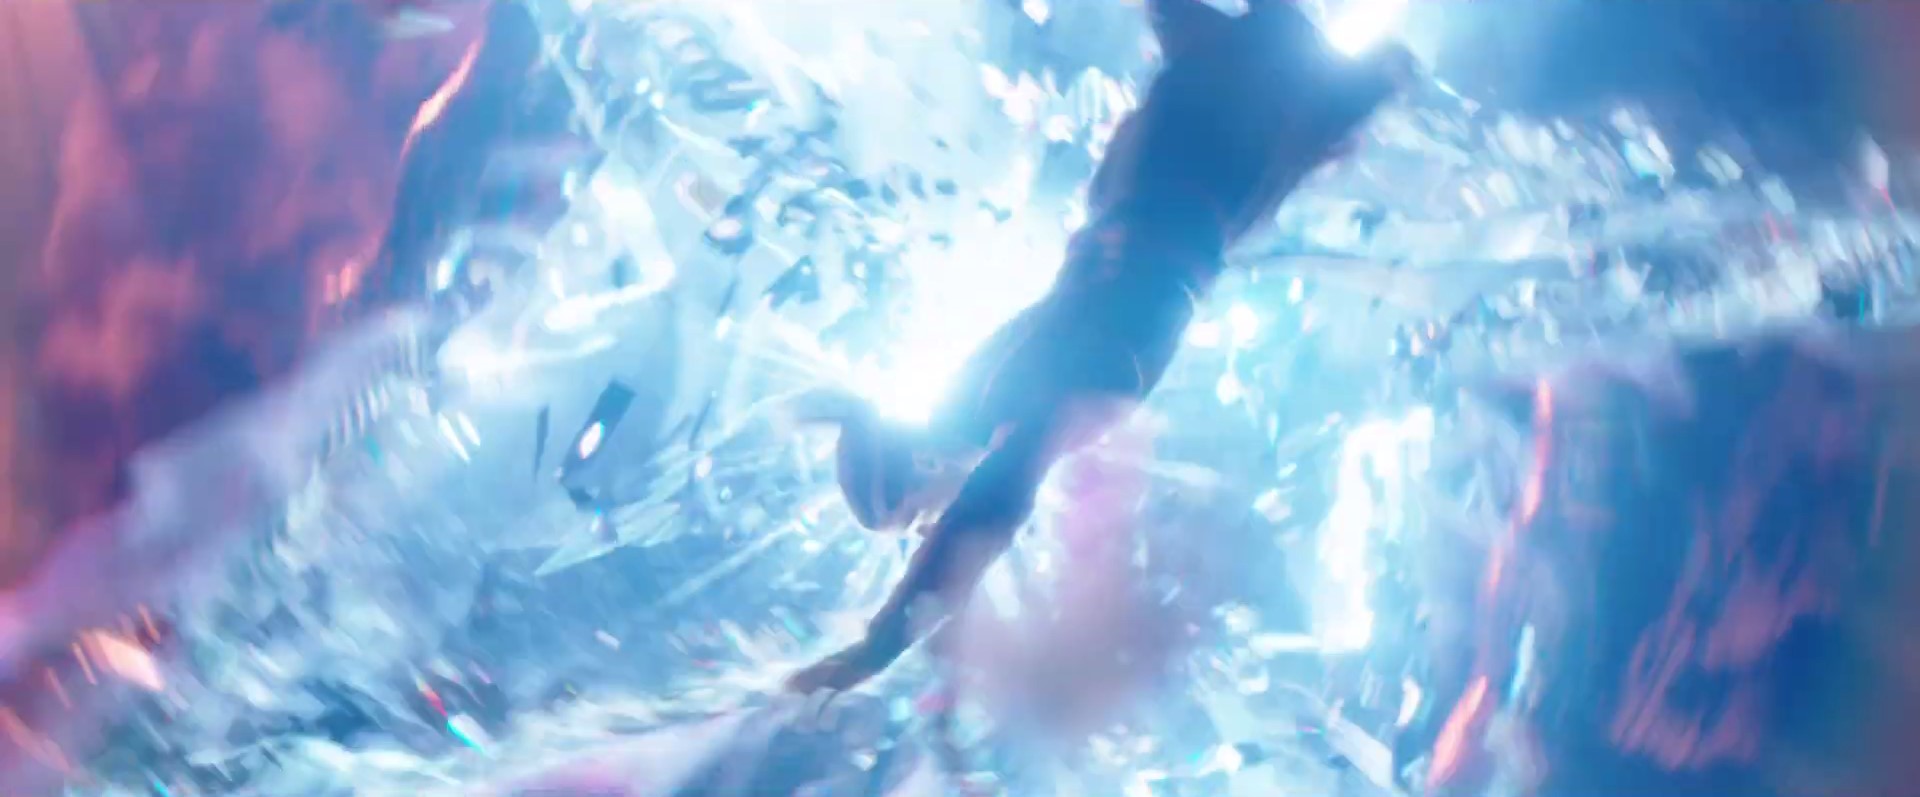 دیفندر استرنج در حال چرخش به دور خود در تریلر فیلم Doctor Strange in the Multiverse of Madness